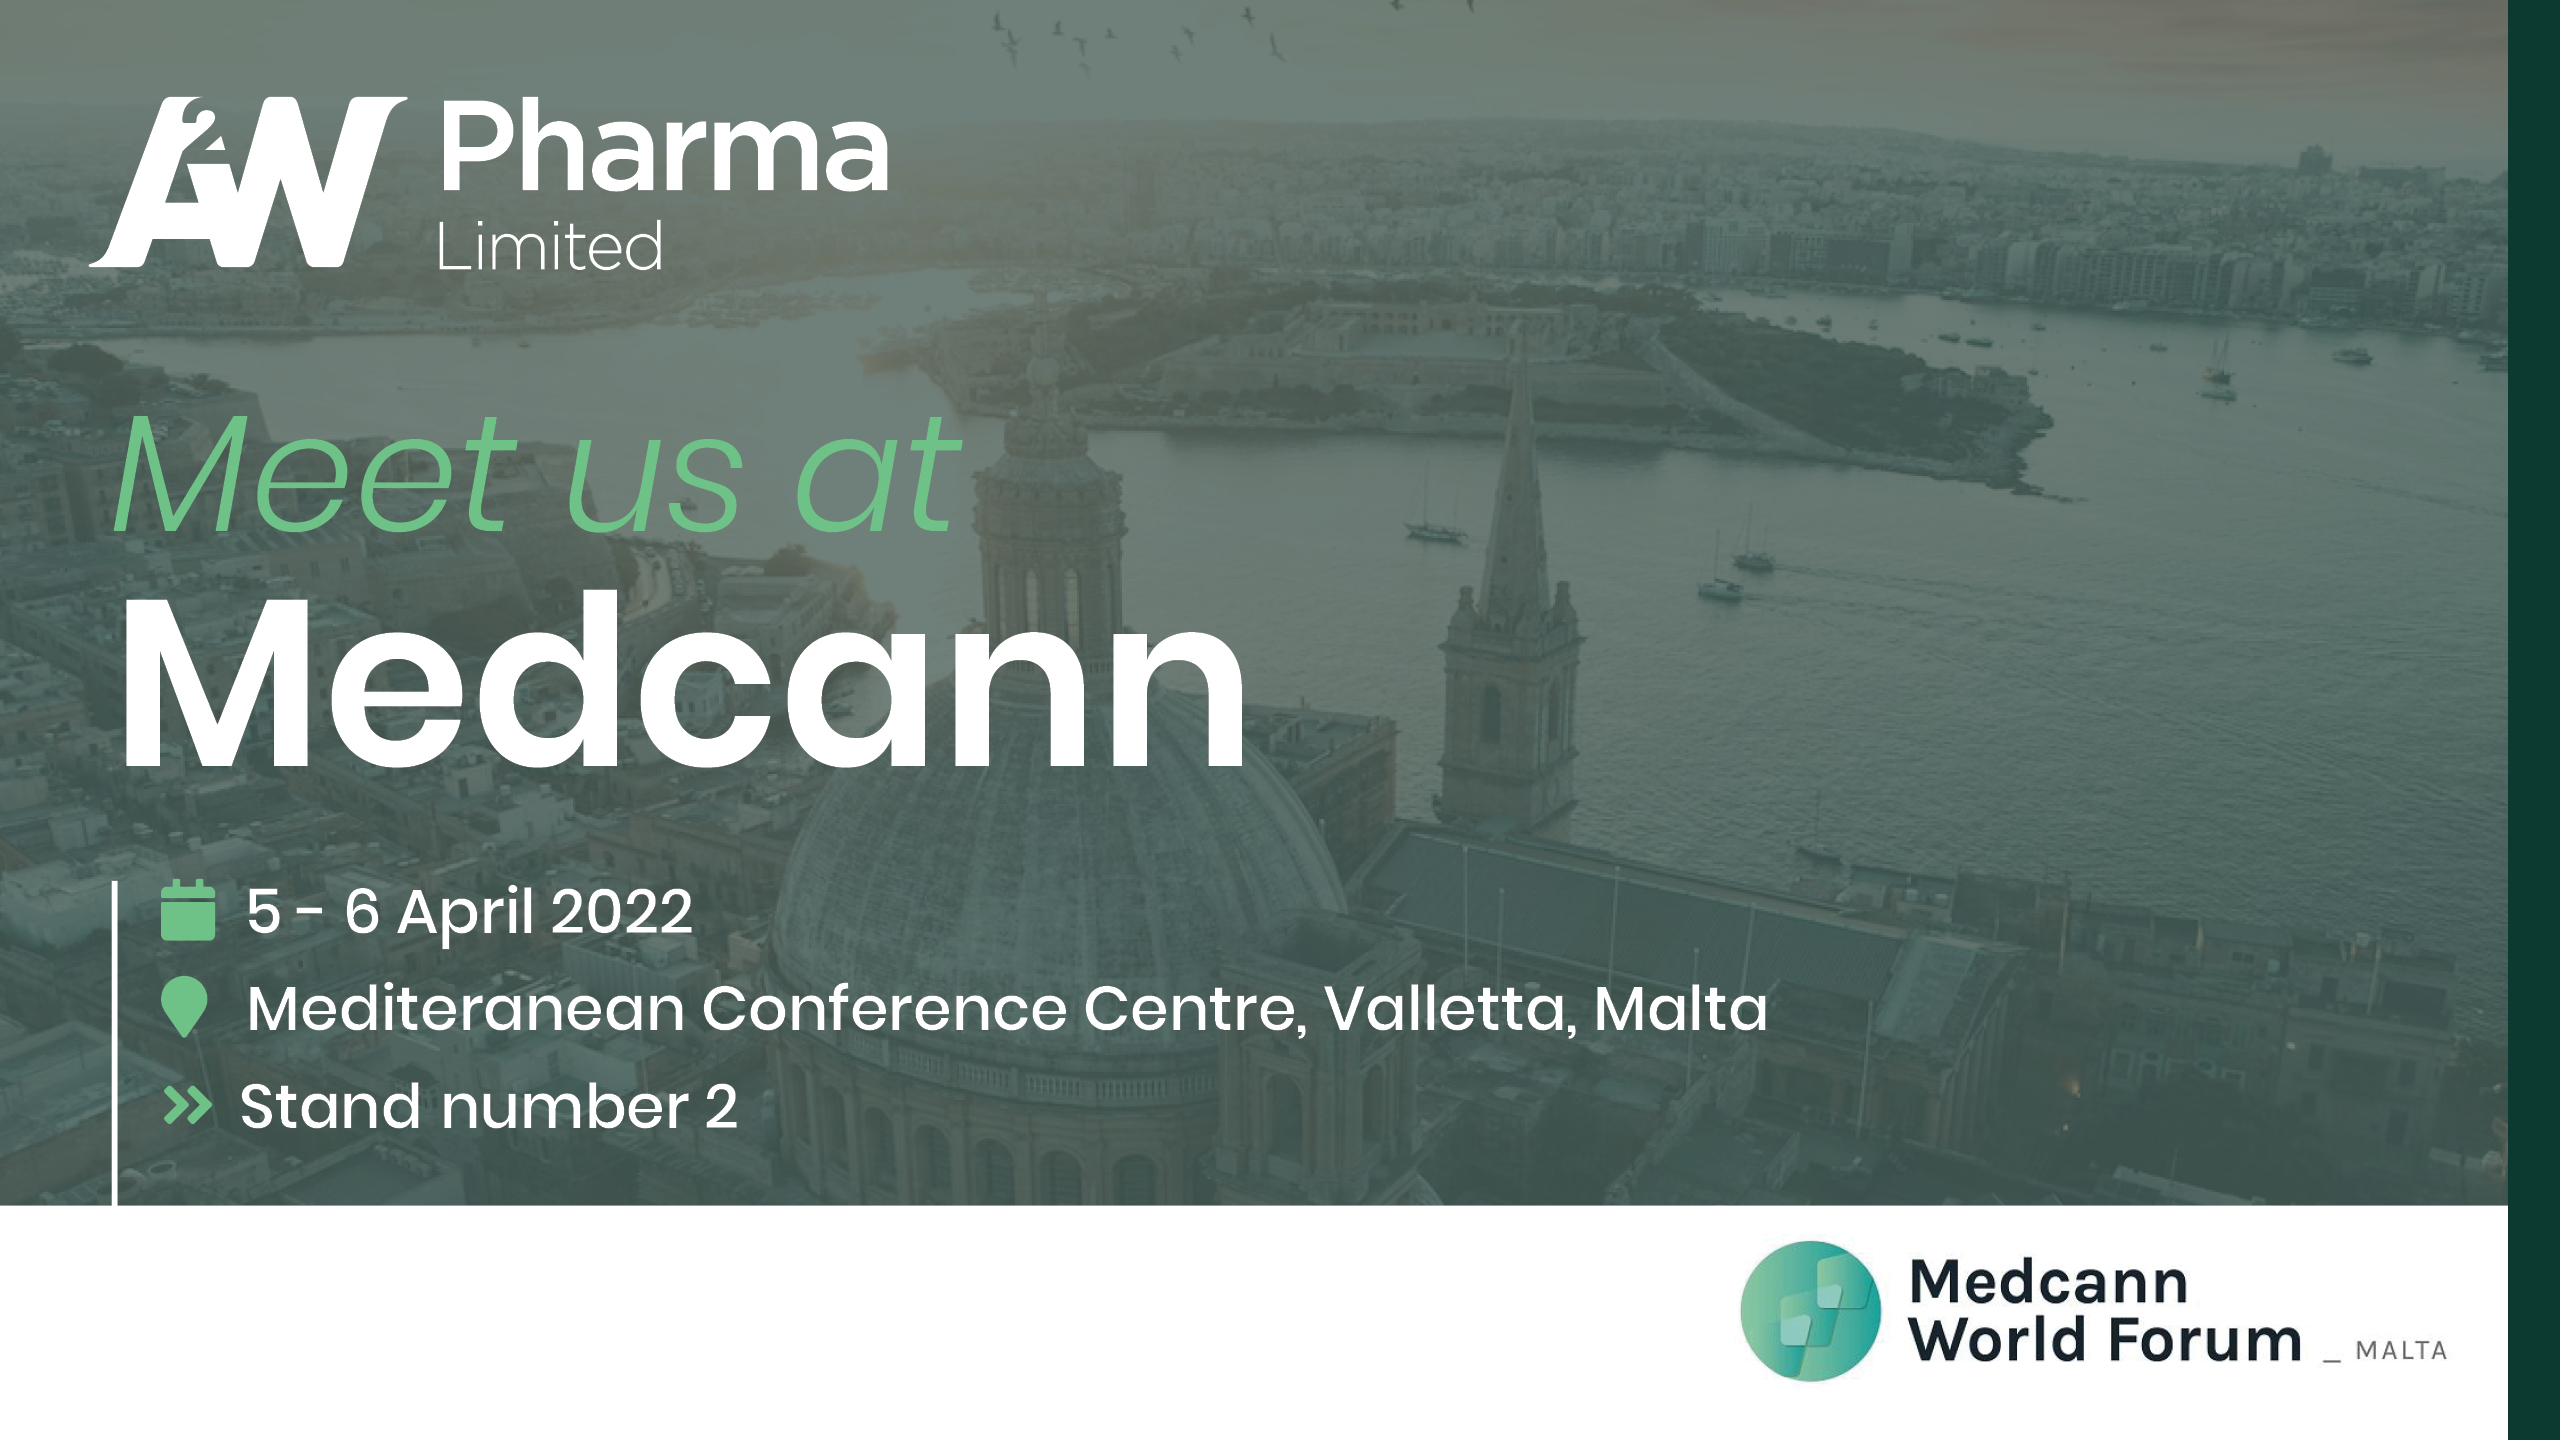 Medcann World Forum In Malta, 5-6 April 2022